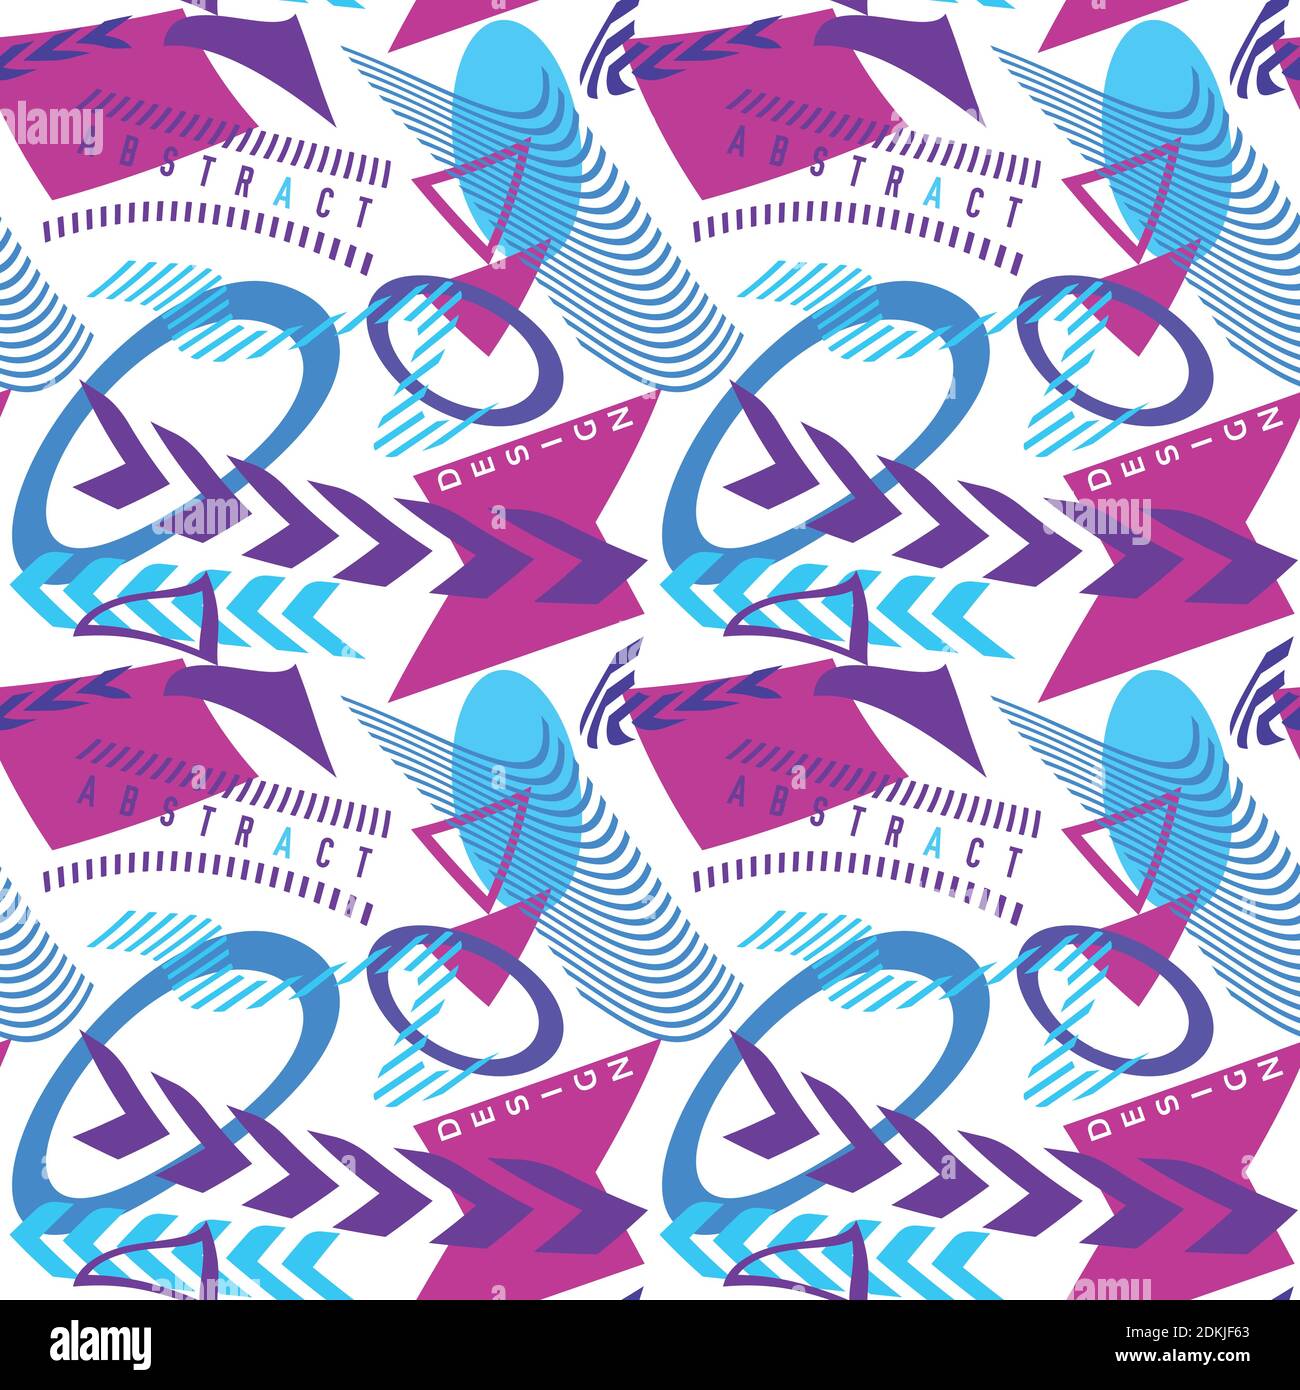 Abstraktes Nahtloses Muster mit blauen und roten violetten geschwungenen einfachen Formen. Vektorgrafik Hintergrund. CMYK-Farben Stock Vektor